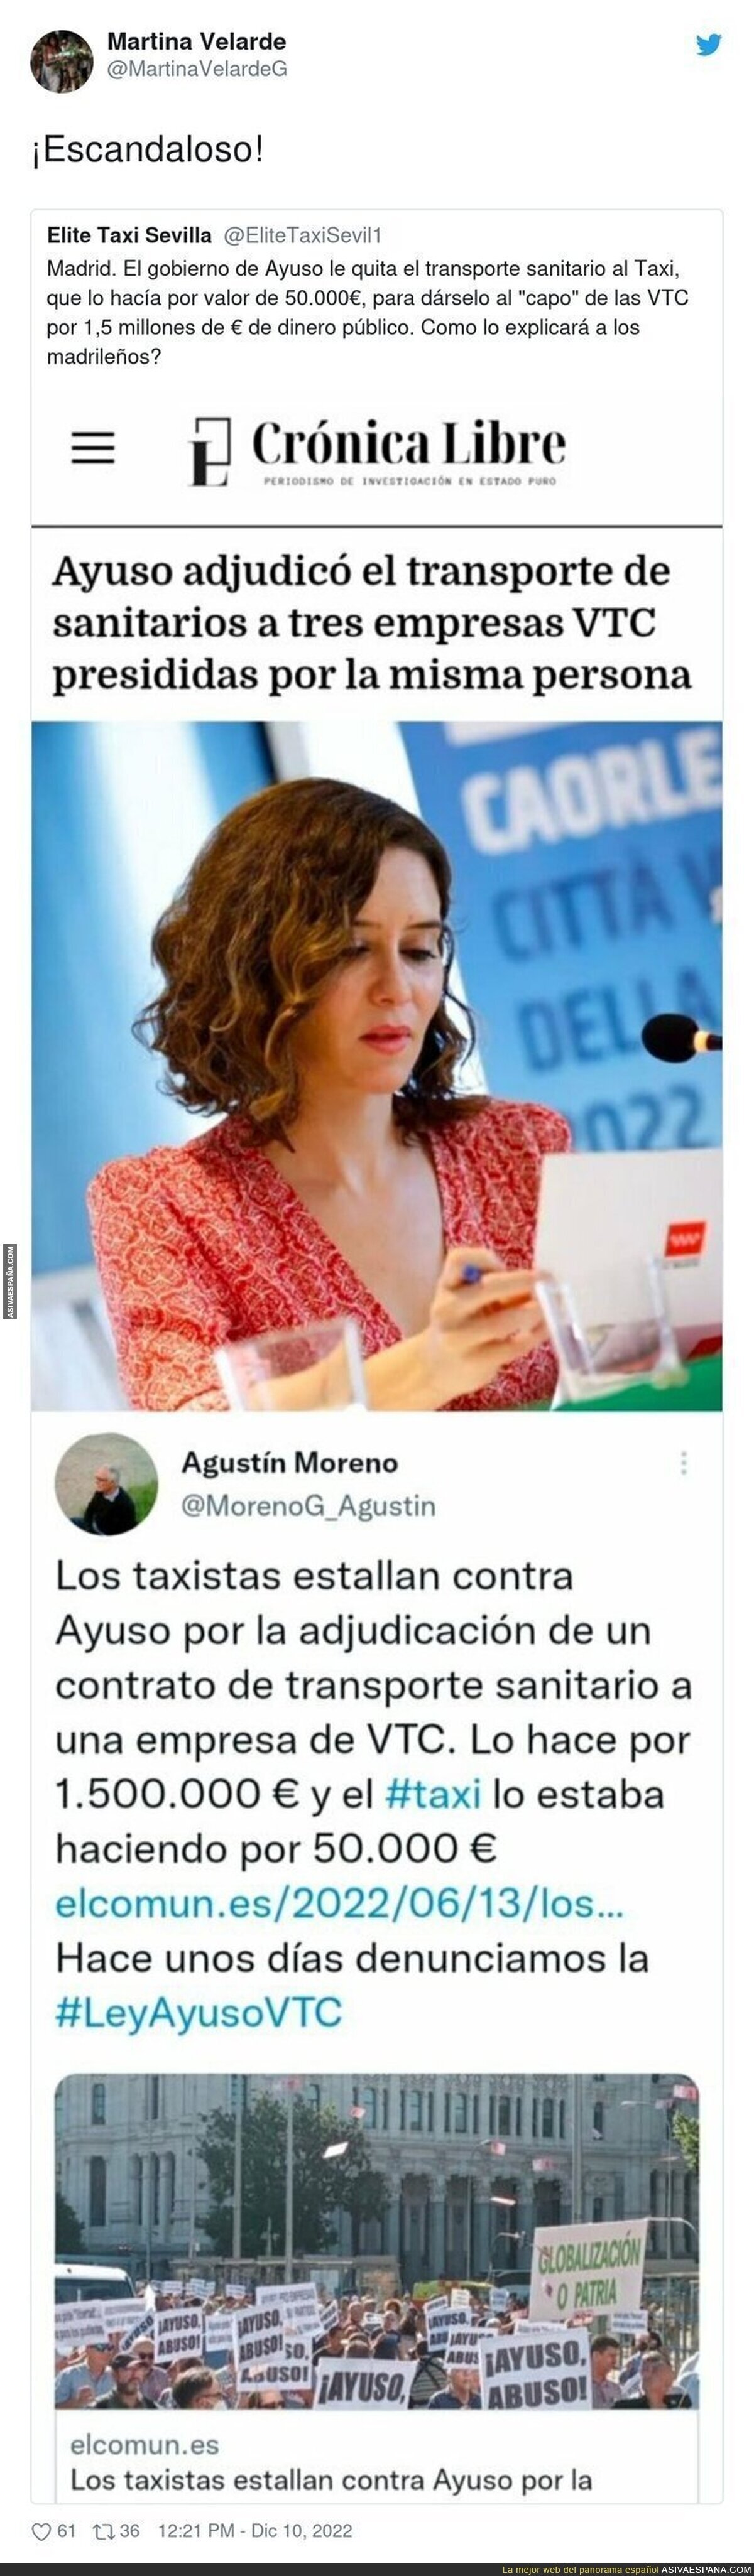 Sigue el escándalo entre taxis y VTC en Madrid